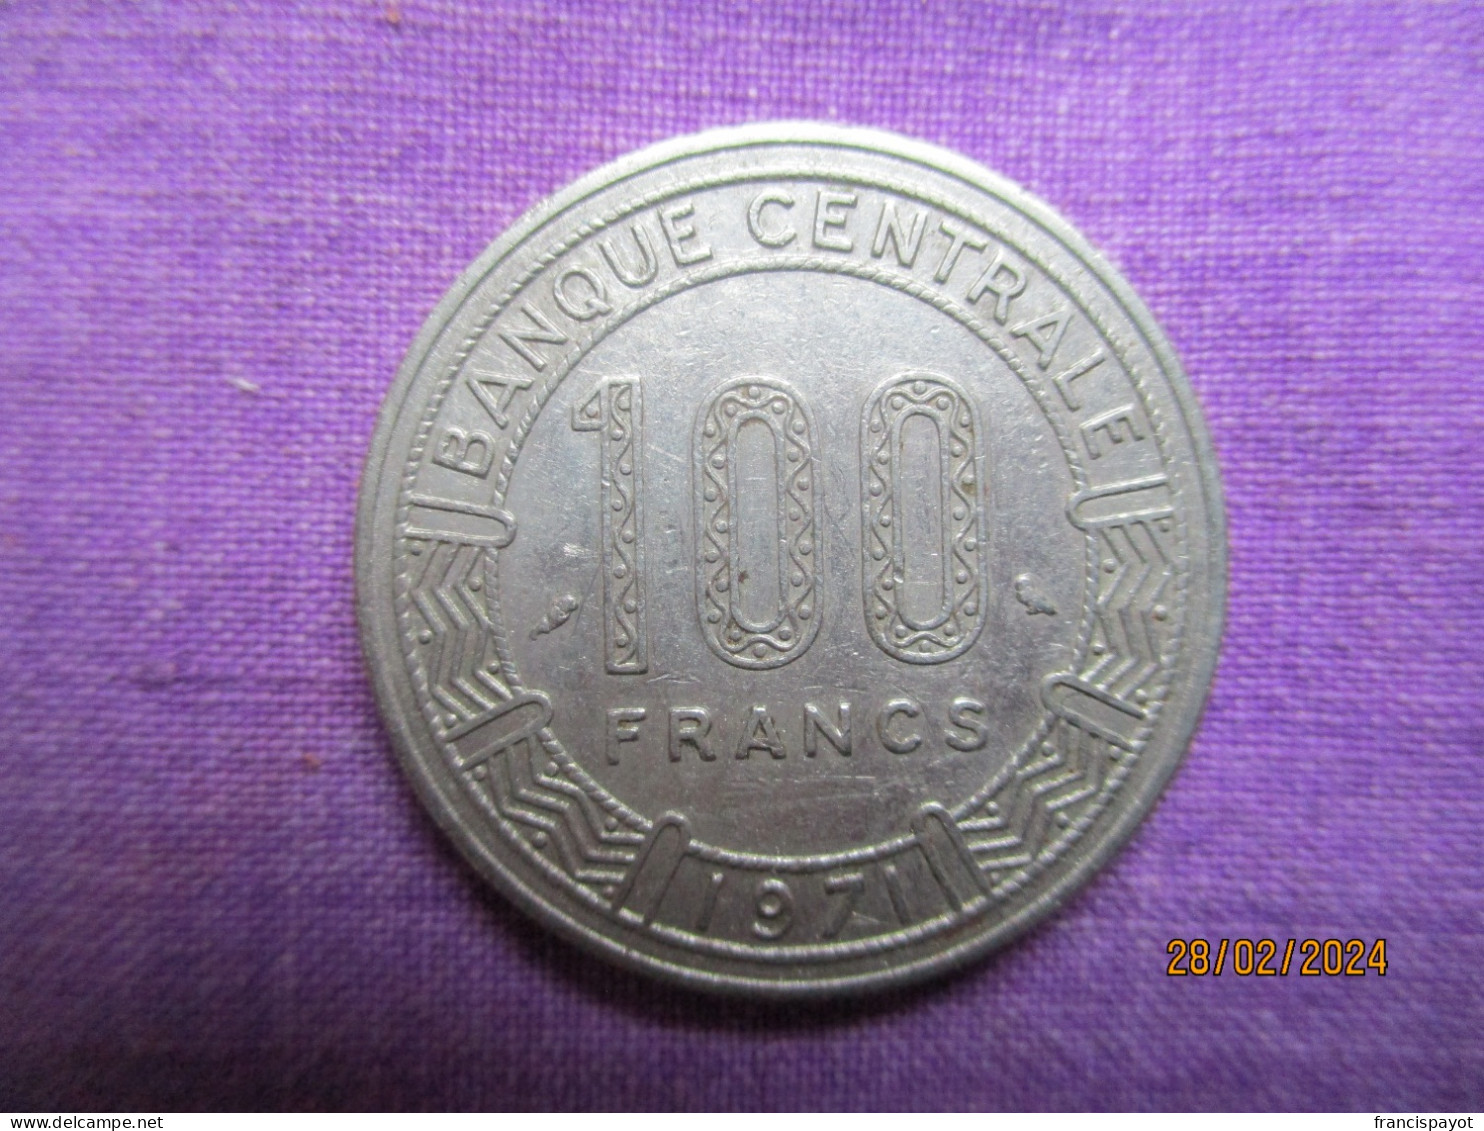 République Centrafricaine: 100 Francs CFA 1971 - Repubblica Centroafricana